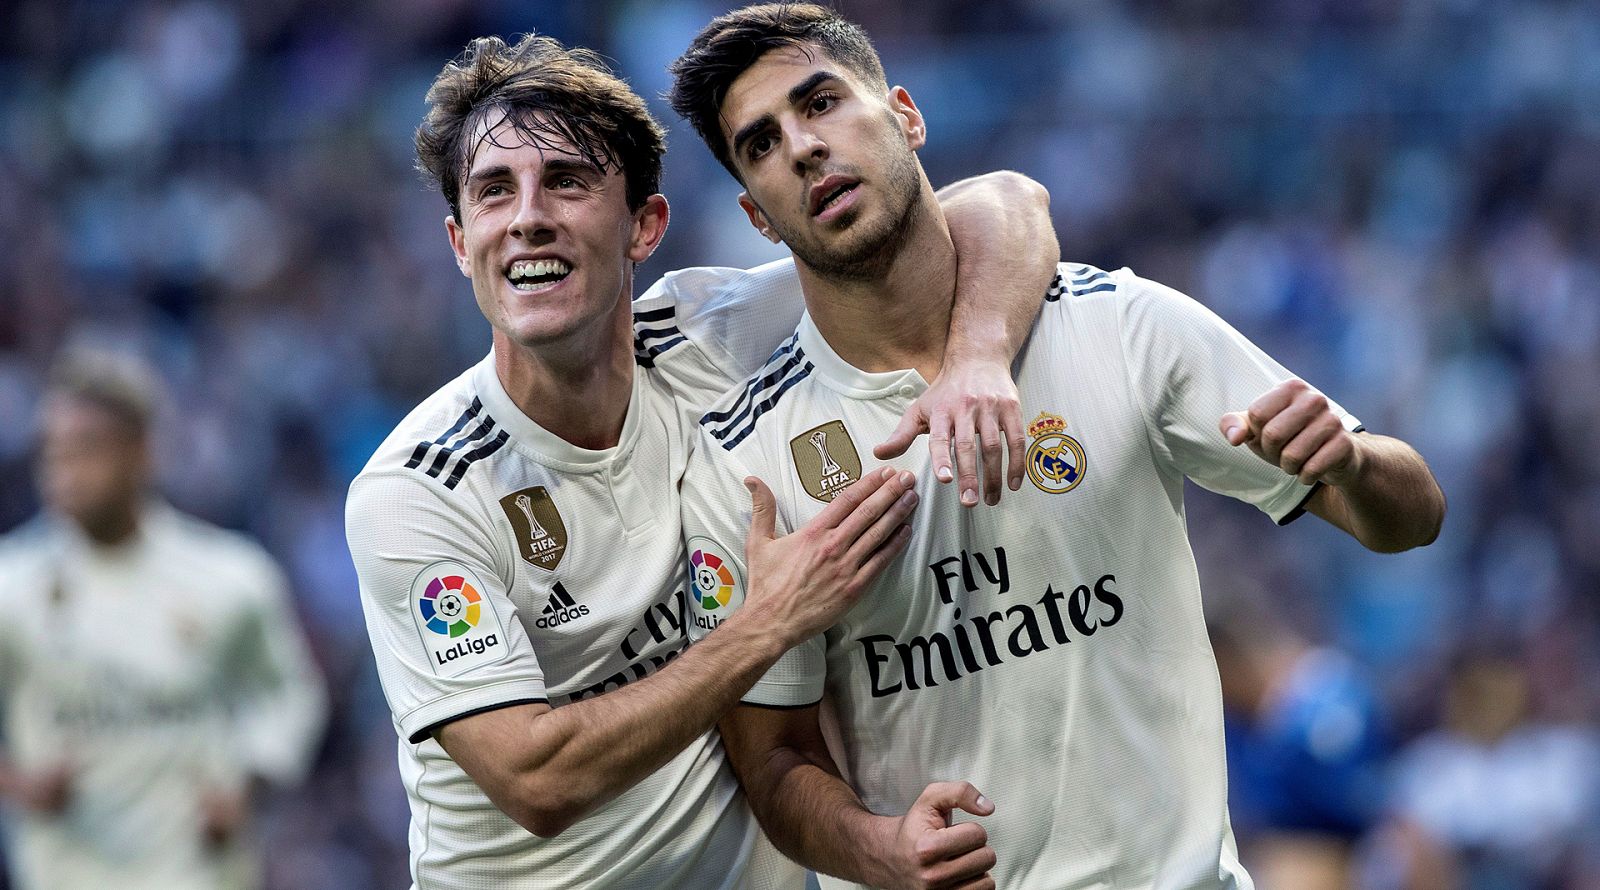 El delantero del Real Madrid Marco Asensio, y el defensa Álvaro Odriozola, festejan el gol del primero.